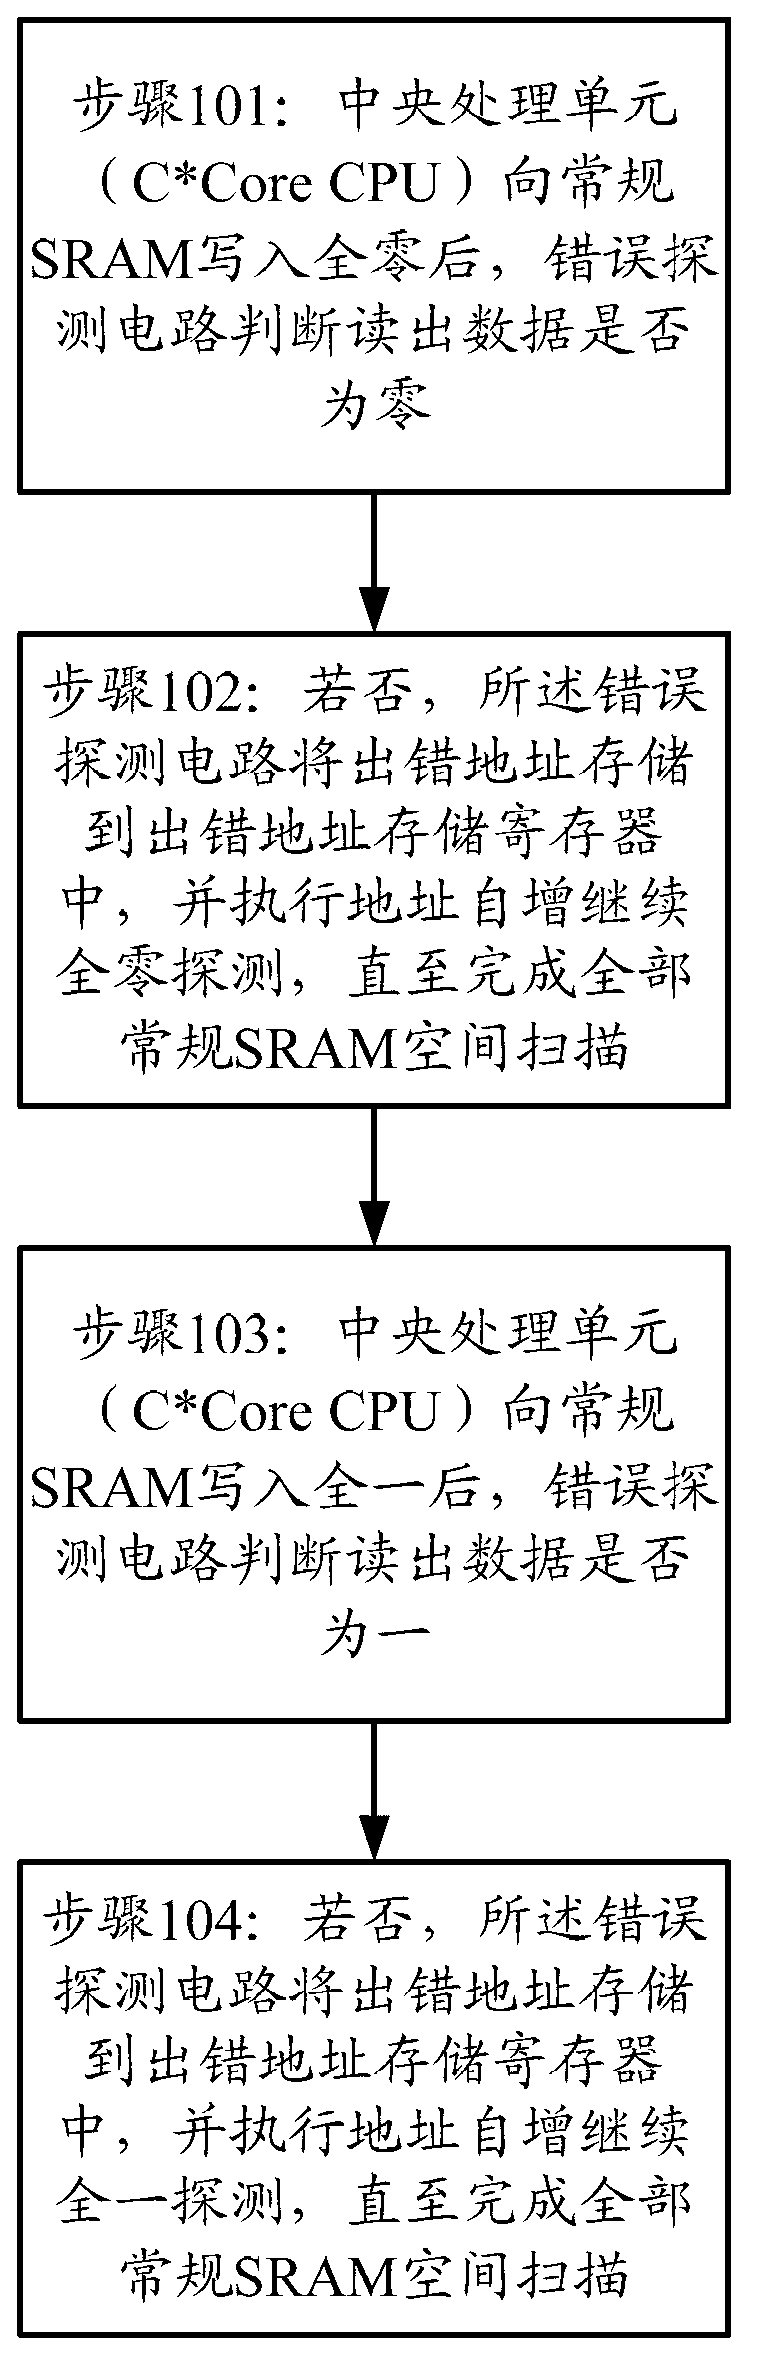 Self-repairing SRAM (Static Random Access Memory) controller design for DTMB (Digital Terrestrial Multimedia Broadcasting) demodulation chip